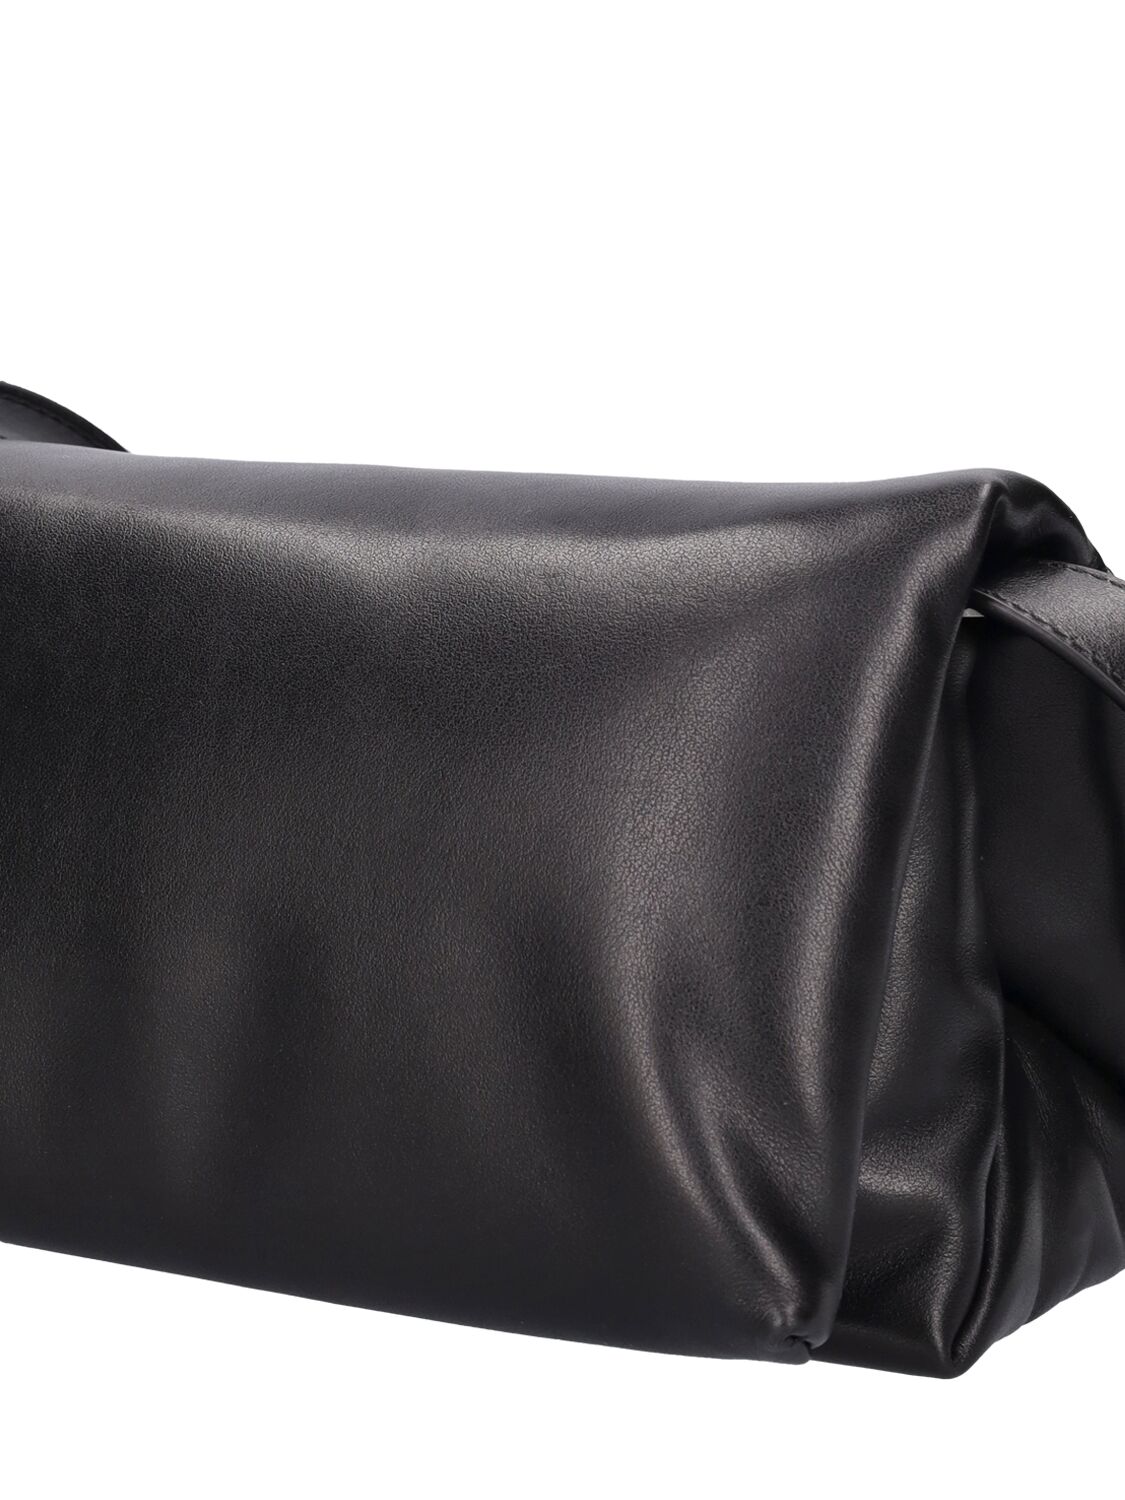 Shop Marni Small Prisma Leather Bag In Black